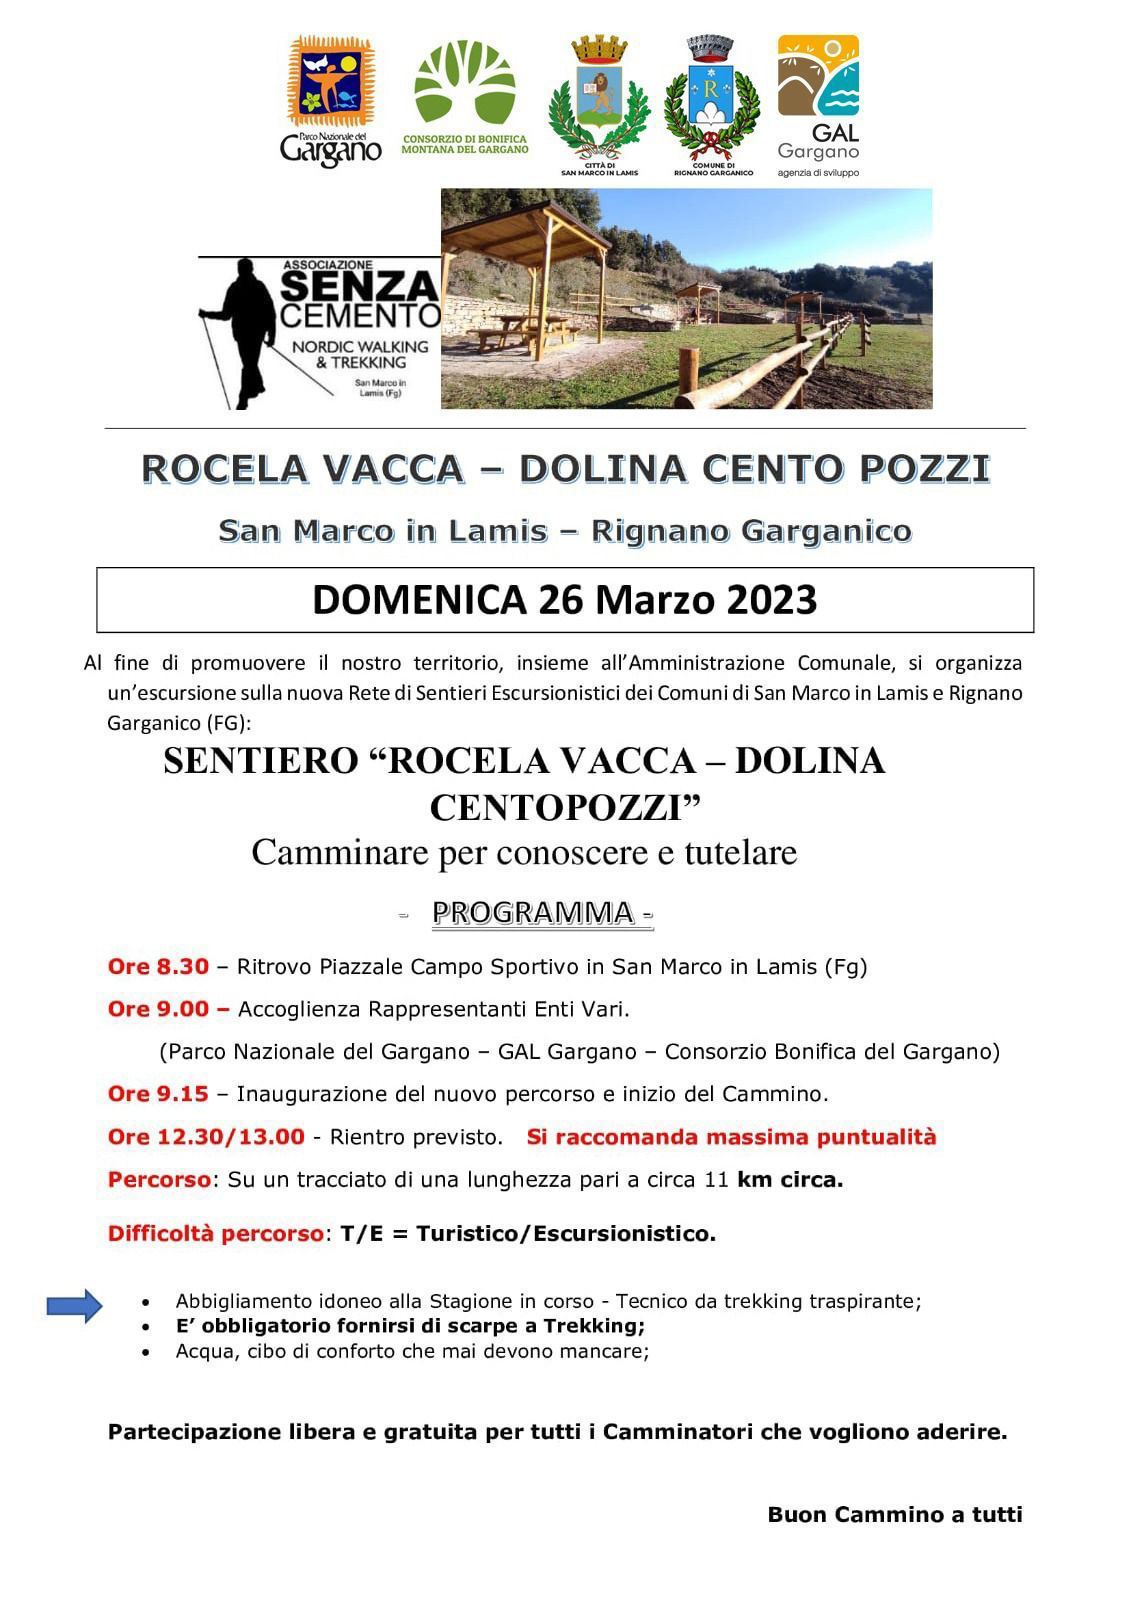 Domenica 26 marzo escursione in programma sulla nuova Rete sentieristica Rocela Vacca Centopozzi